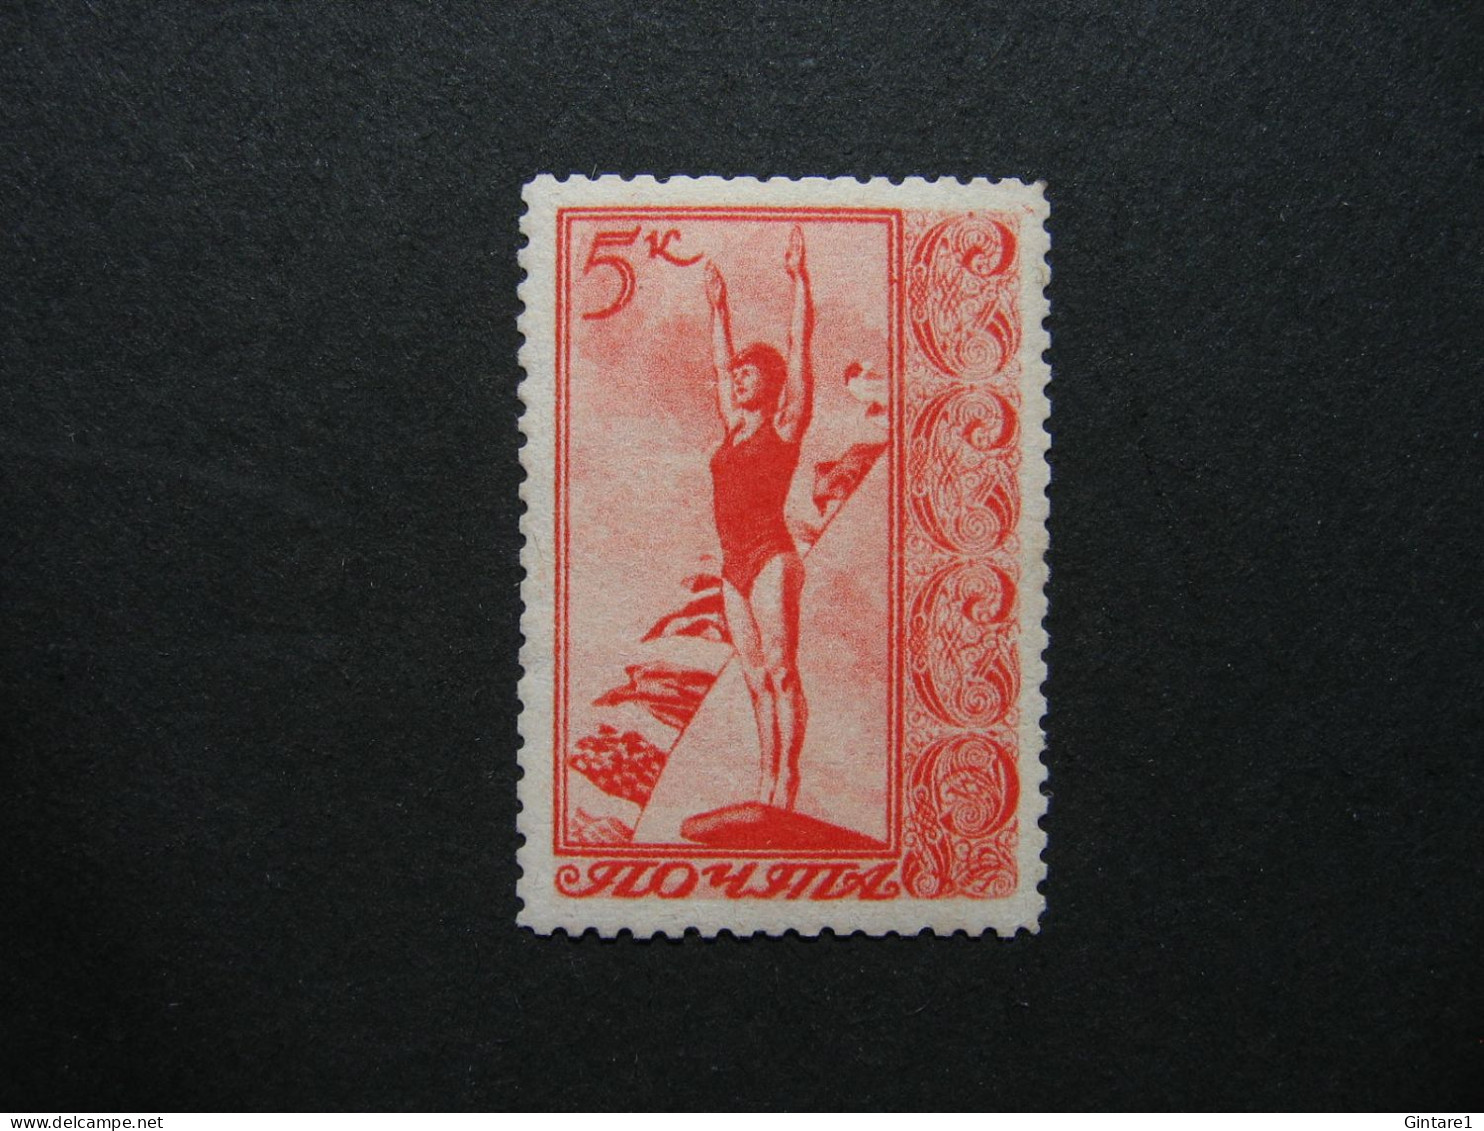 Russia Soviet 1938, Russland Soviet 1938, Russie Soviet 1938, Michel 657, Mi 657, MNH   [09] - Unused Stamps